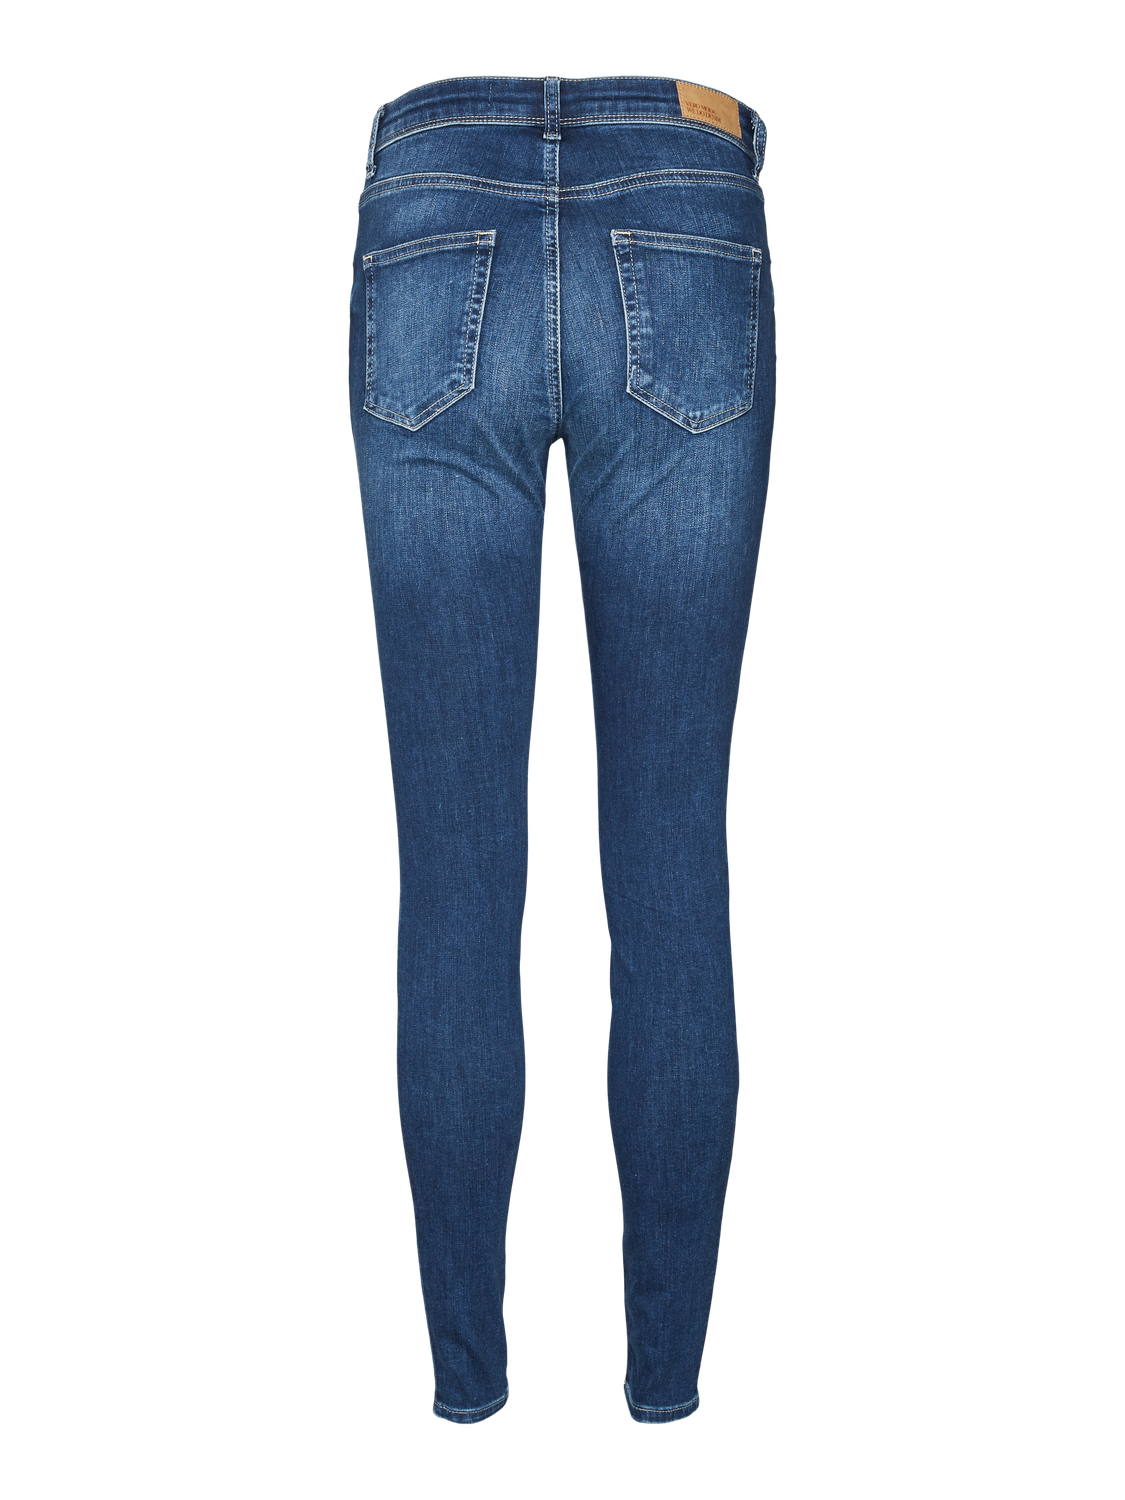 Vero Moda VMLUX Slim Fit Jeans -Medium Blue Denim - 10316883